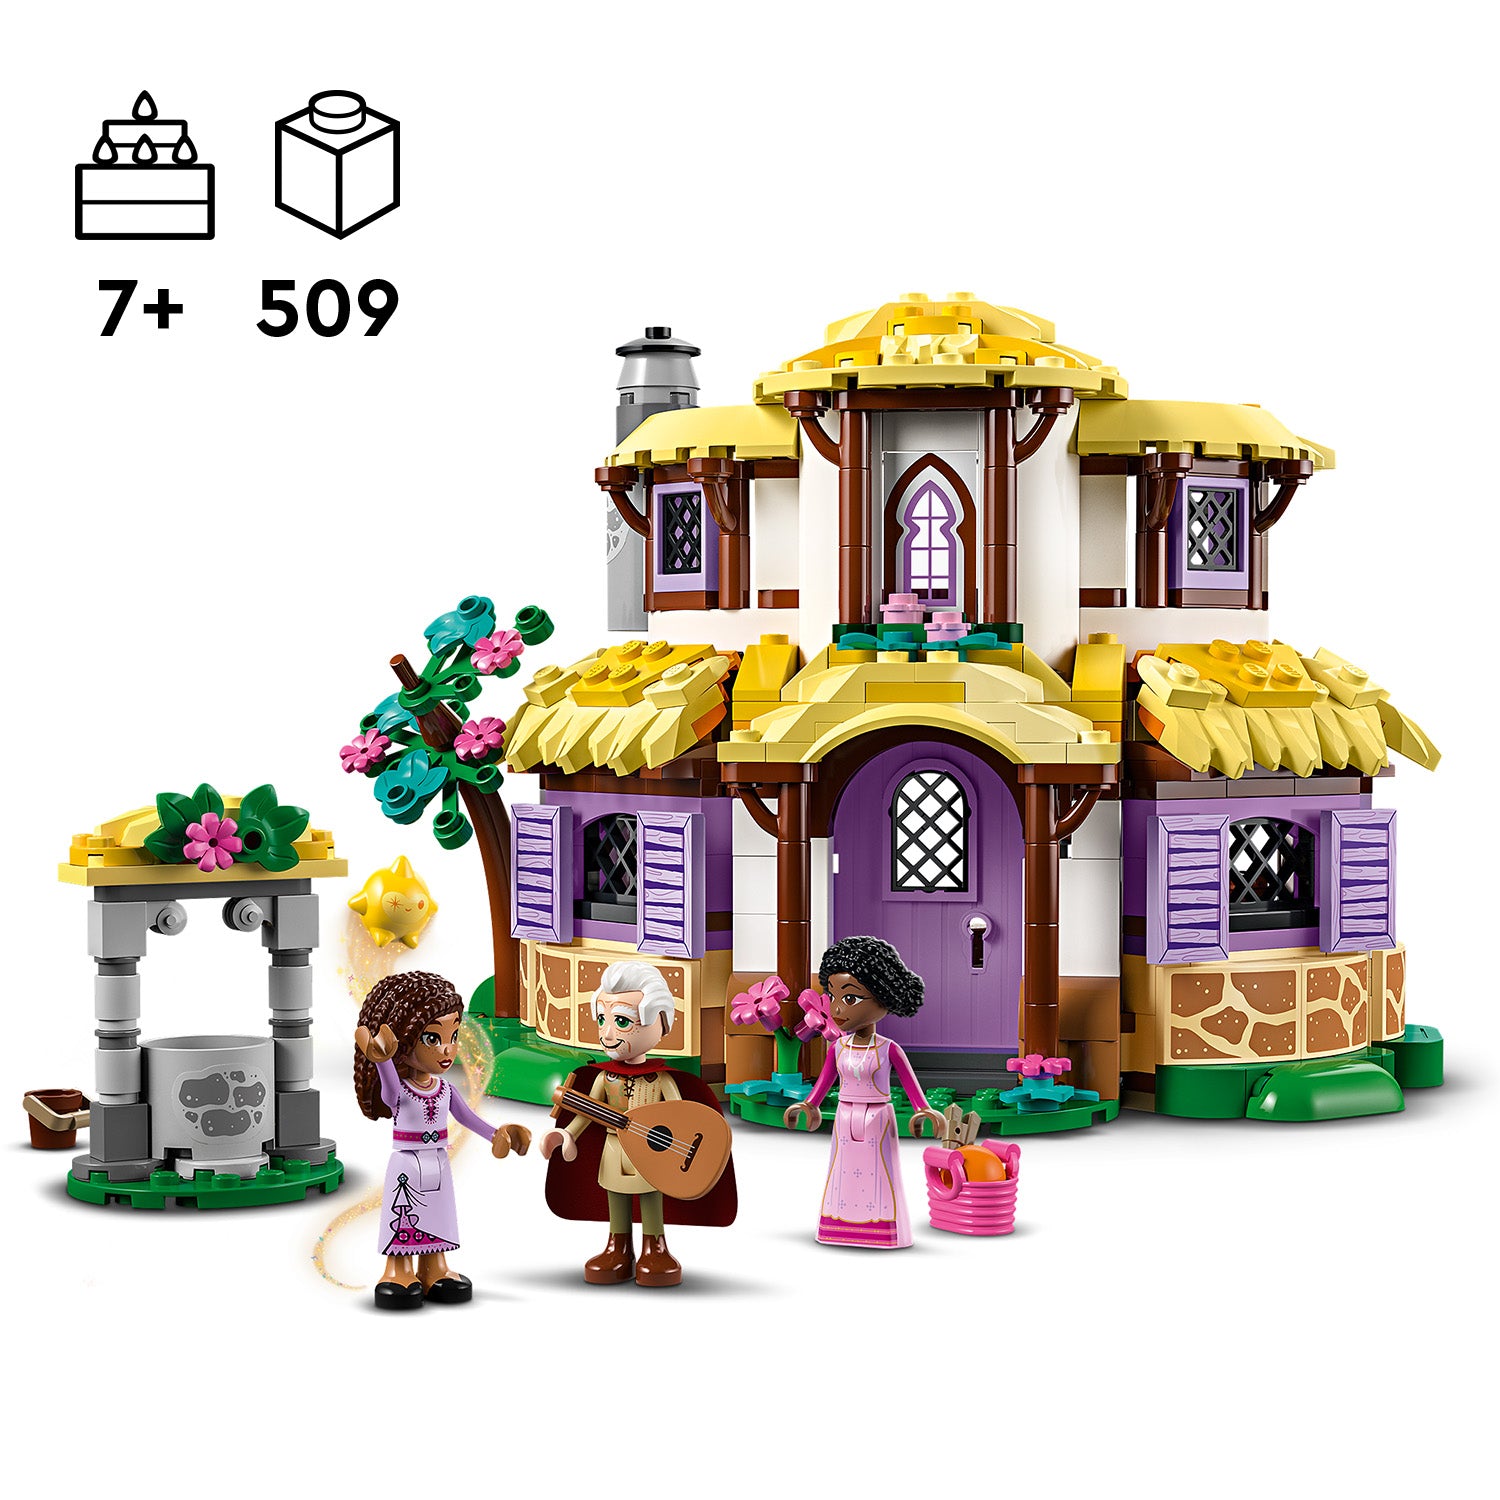 Lego 43231 Disney Wish Ashas Cottage Building